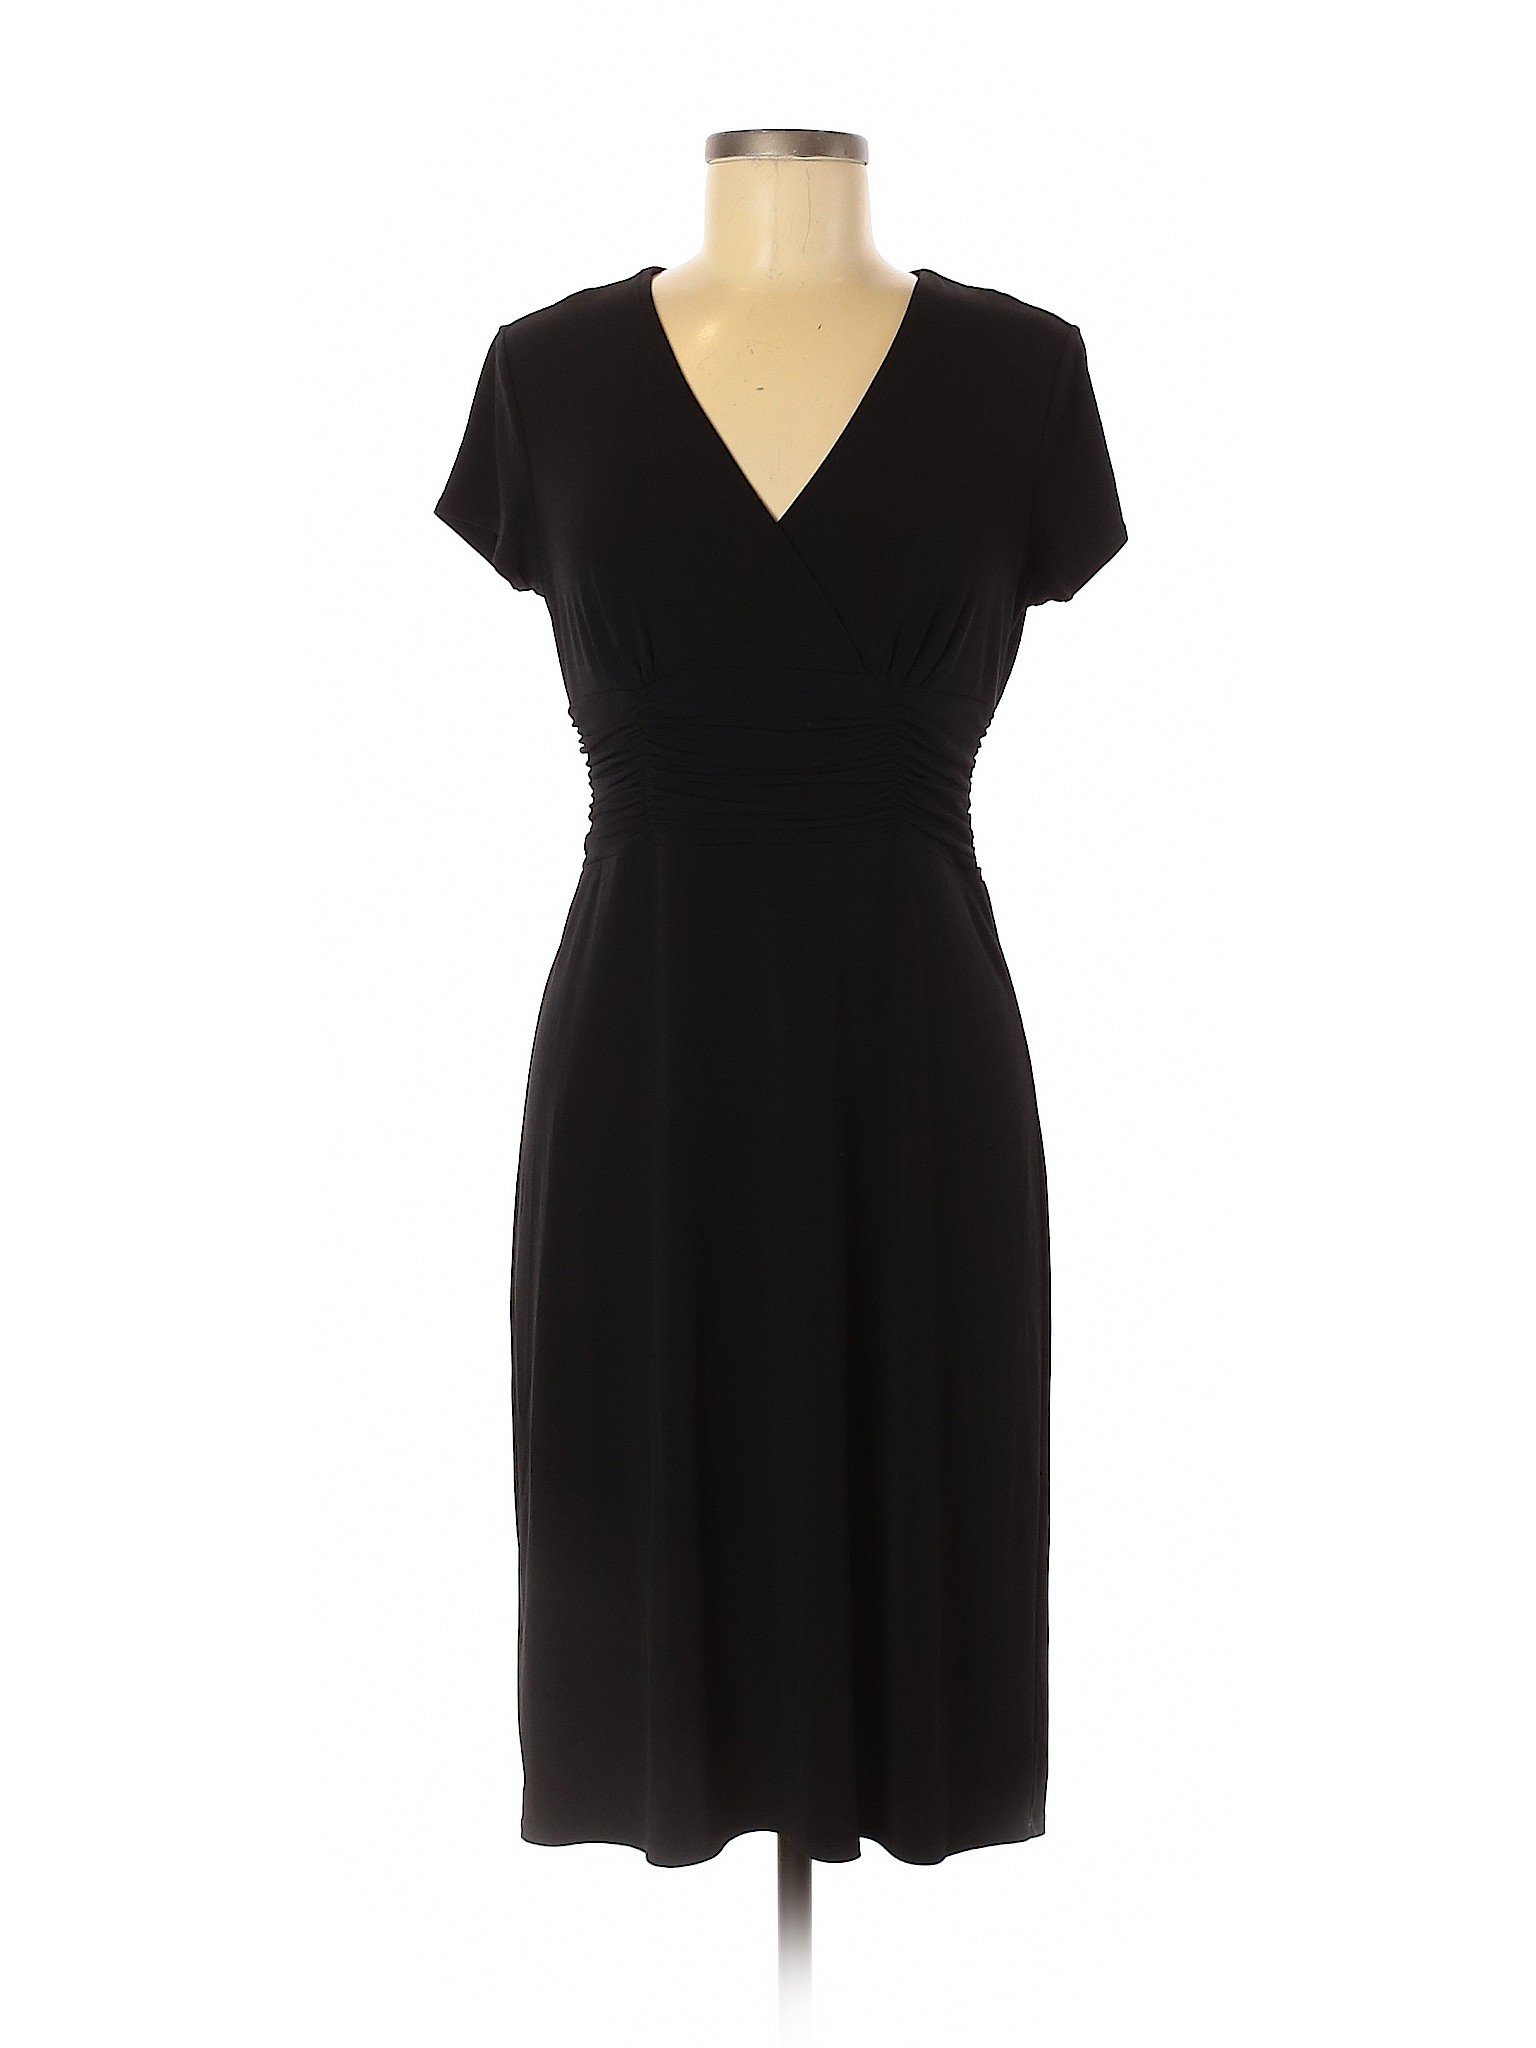 Ann Taylor Women Black Cocktail Dress 8 Petites | eBay